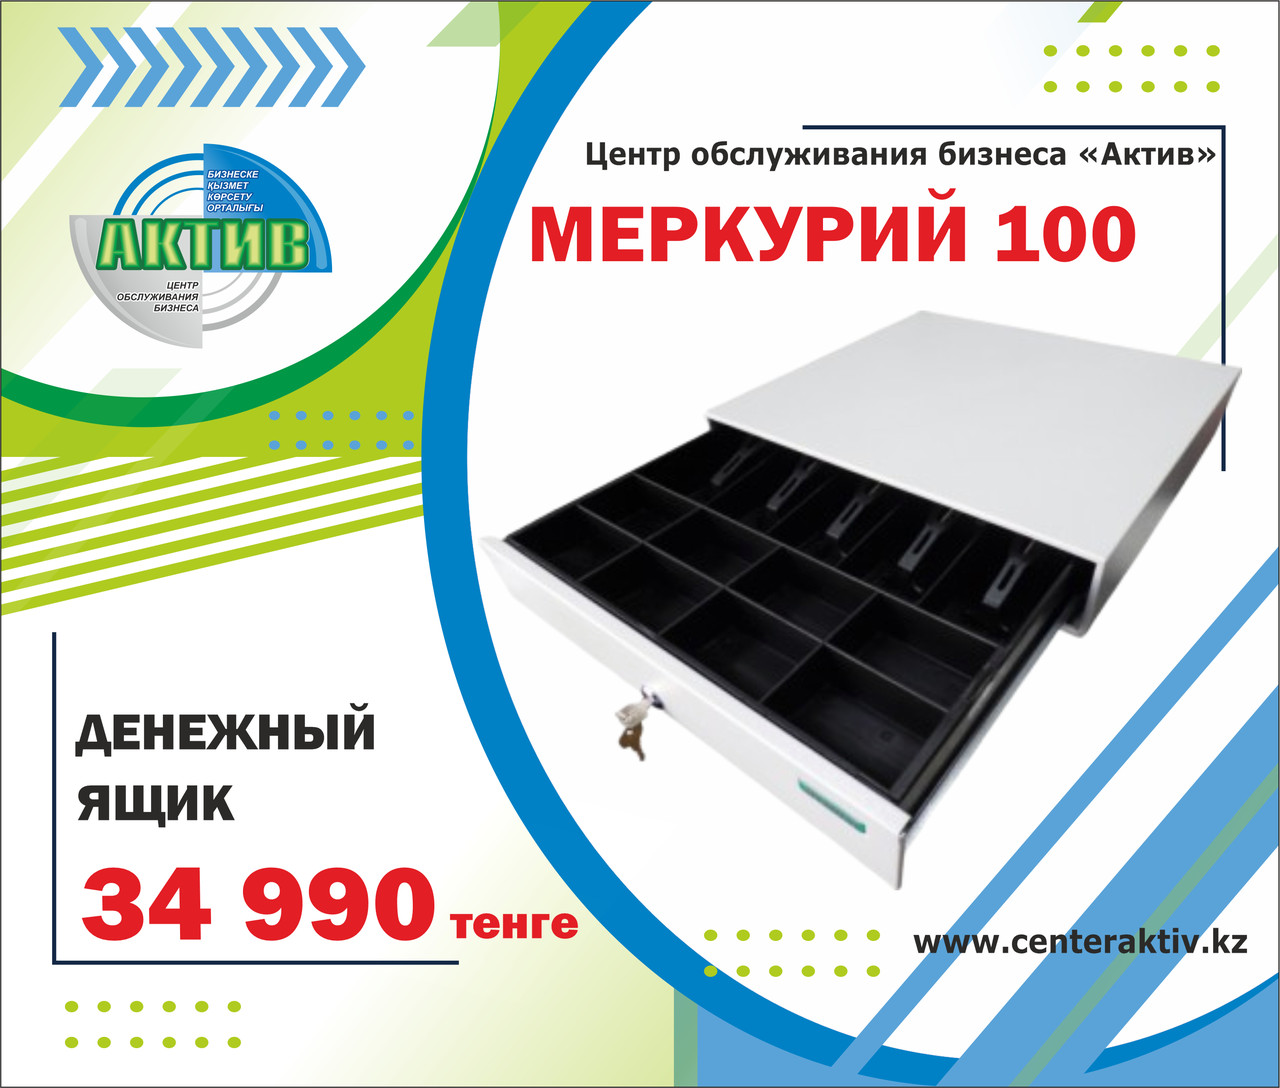 Денежный ящик Меркурий 100. Имеет 5 отделений для купюр изменяемой ширины. Изготовлен из металла. Россия.